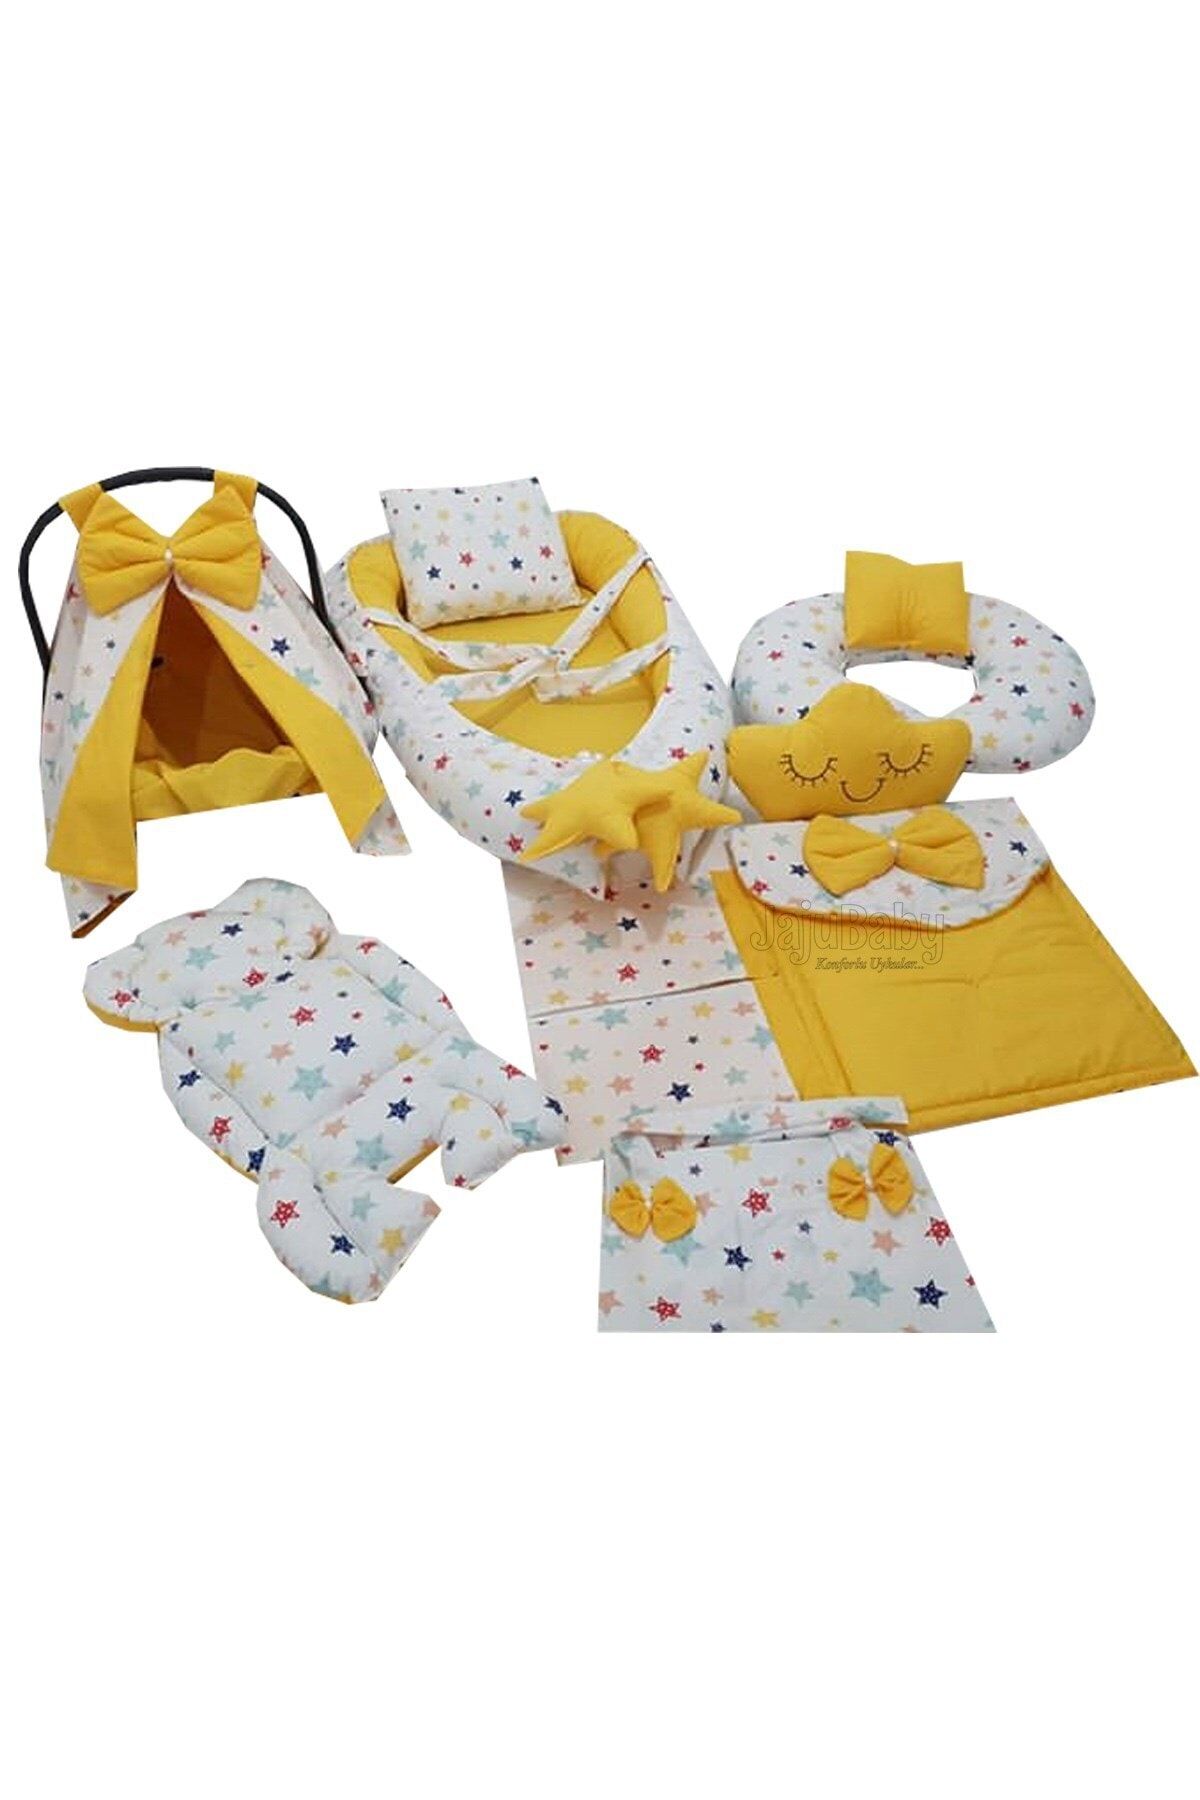 Jaju Baby Nest Renkli Yıldız Sarı Tasarım 9 Parça Jaju-babynest Anne Yanı Bebek Yatağı Set